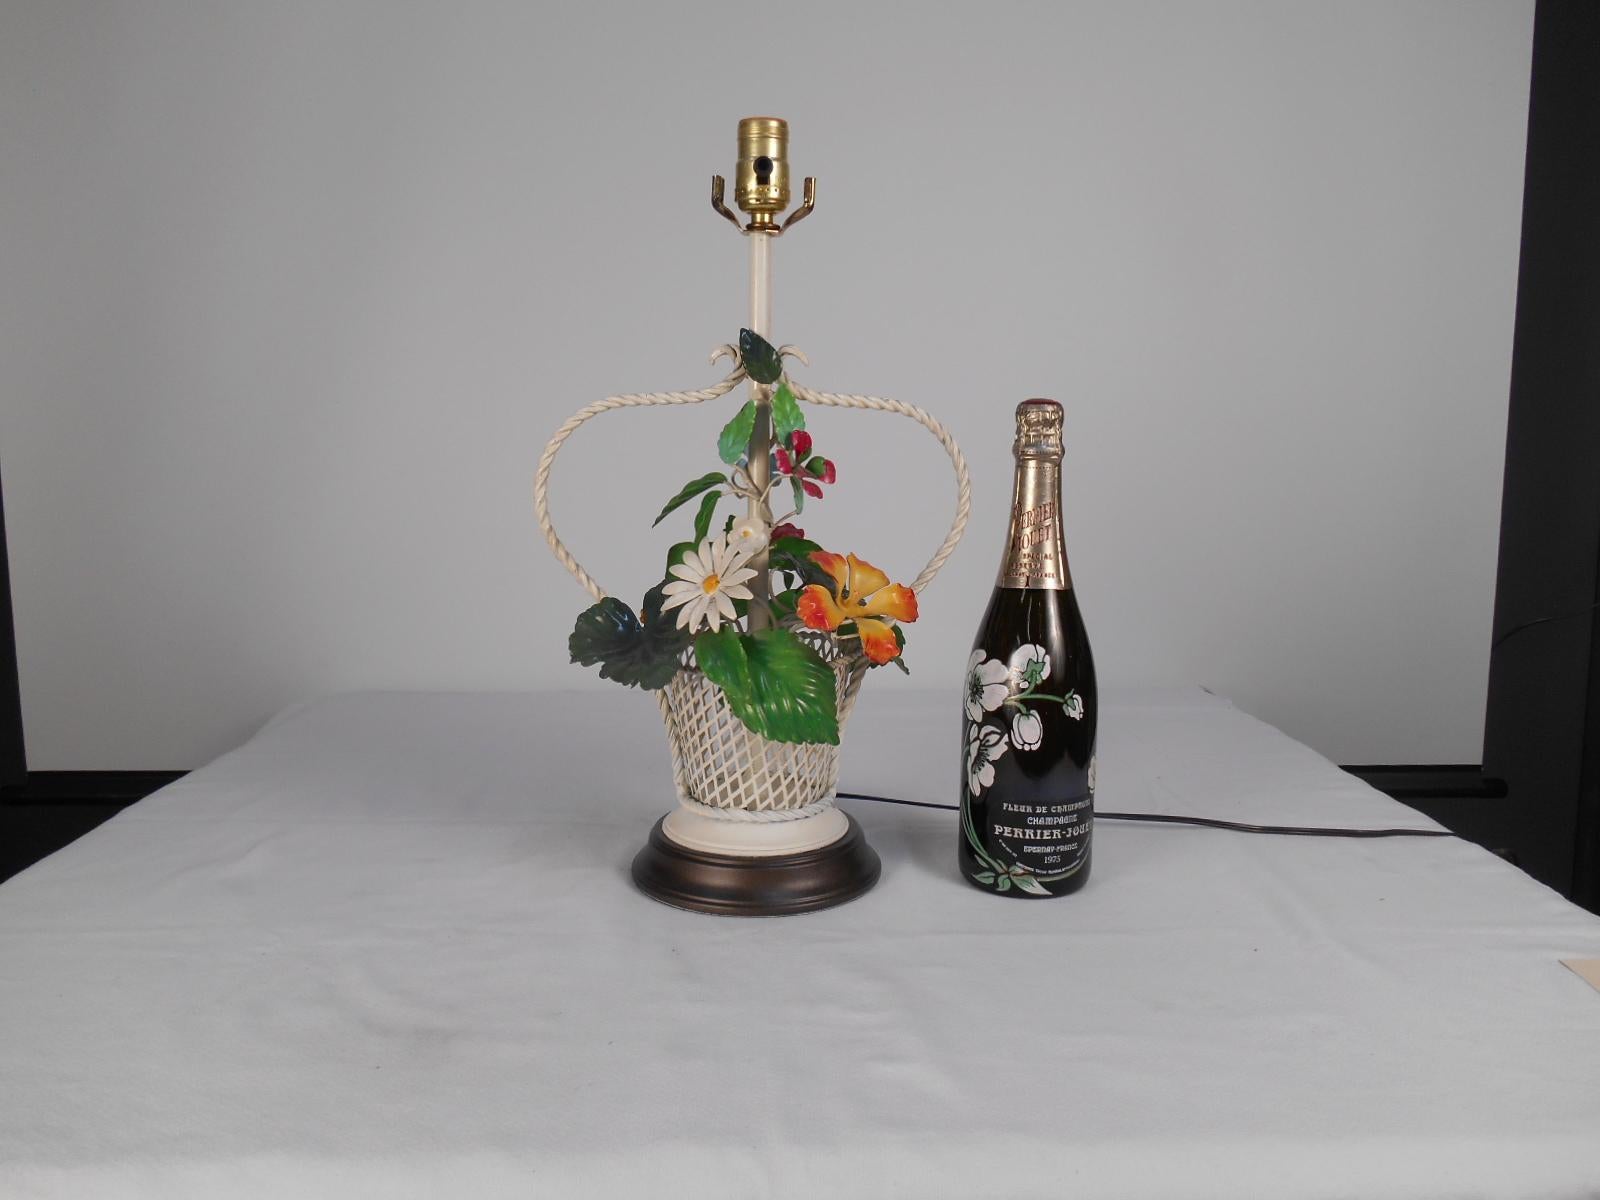 Eine charmante bunte Tole Blumen Korb Tischlampe. Hergestellt in den 1960er Jahren. Der weiß lackierte Korb hebt die Grün-, Orange-, Rot- und Gelbtöne des Blumenstraußes hervor. Wir haben den ursprünglichen Lampensockel mit neuer Farbe aufgefrischt.